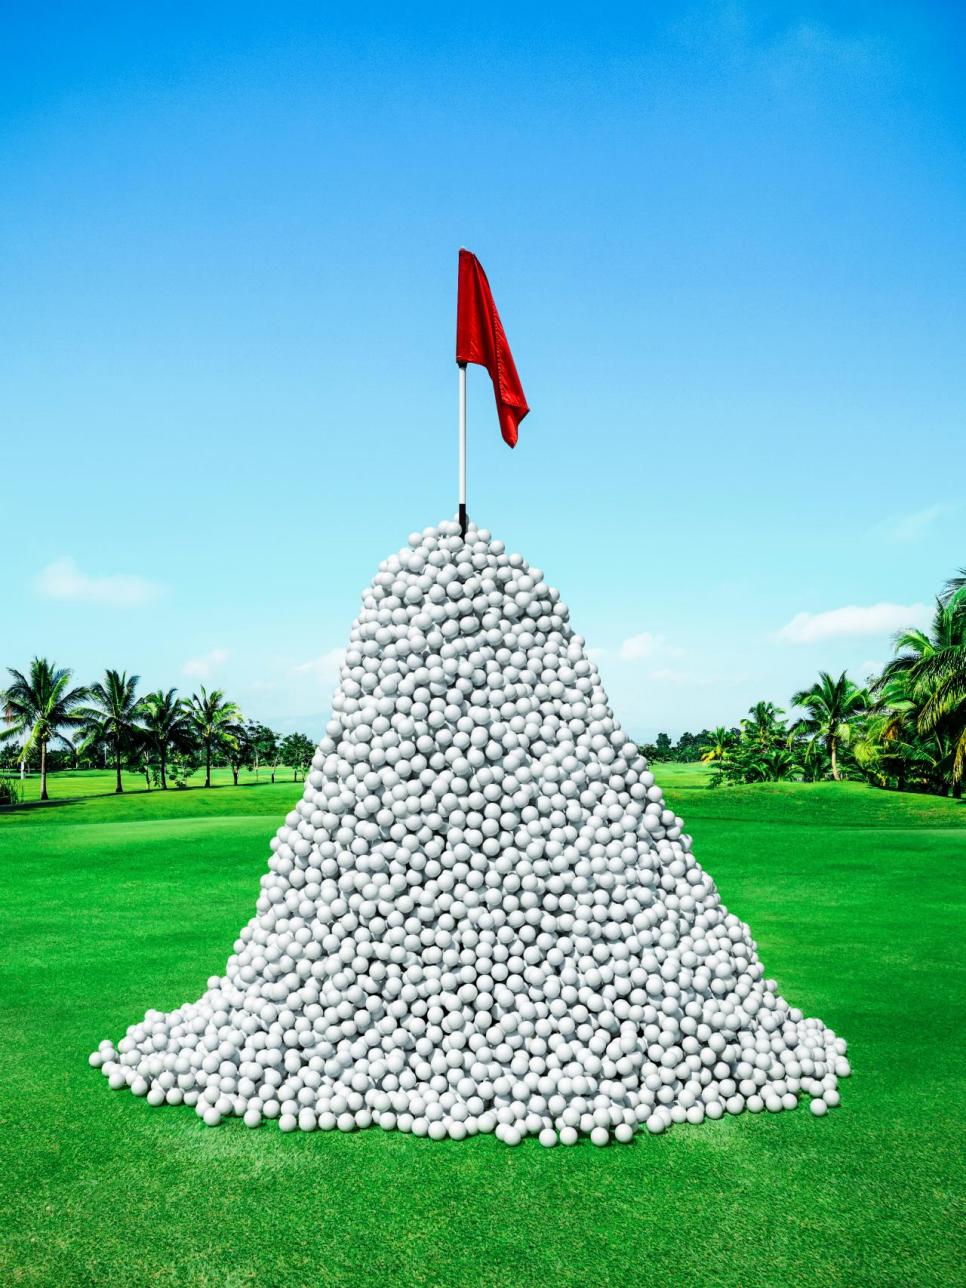 https://www.golfdigest.com/content/dam/images/golfdigest/fullset/2024/golfballs.jpeg